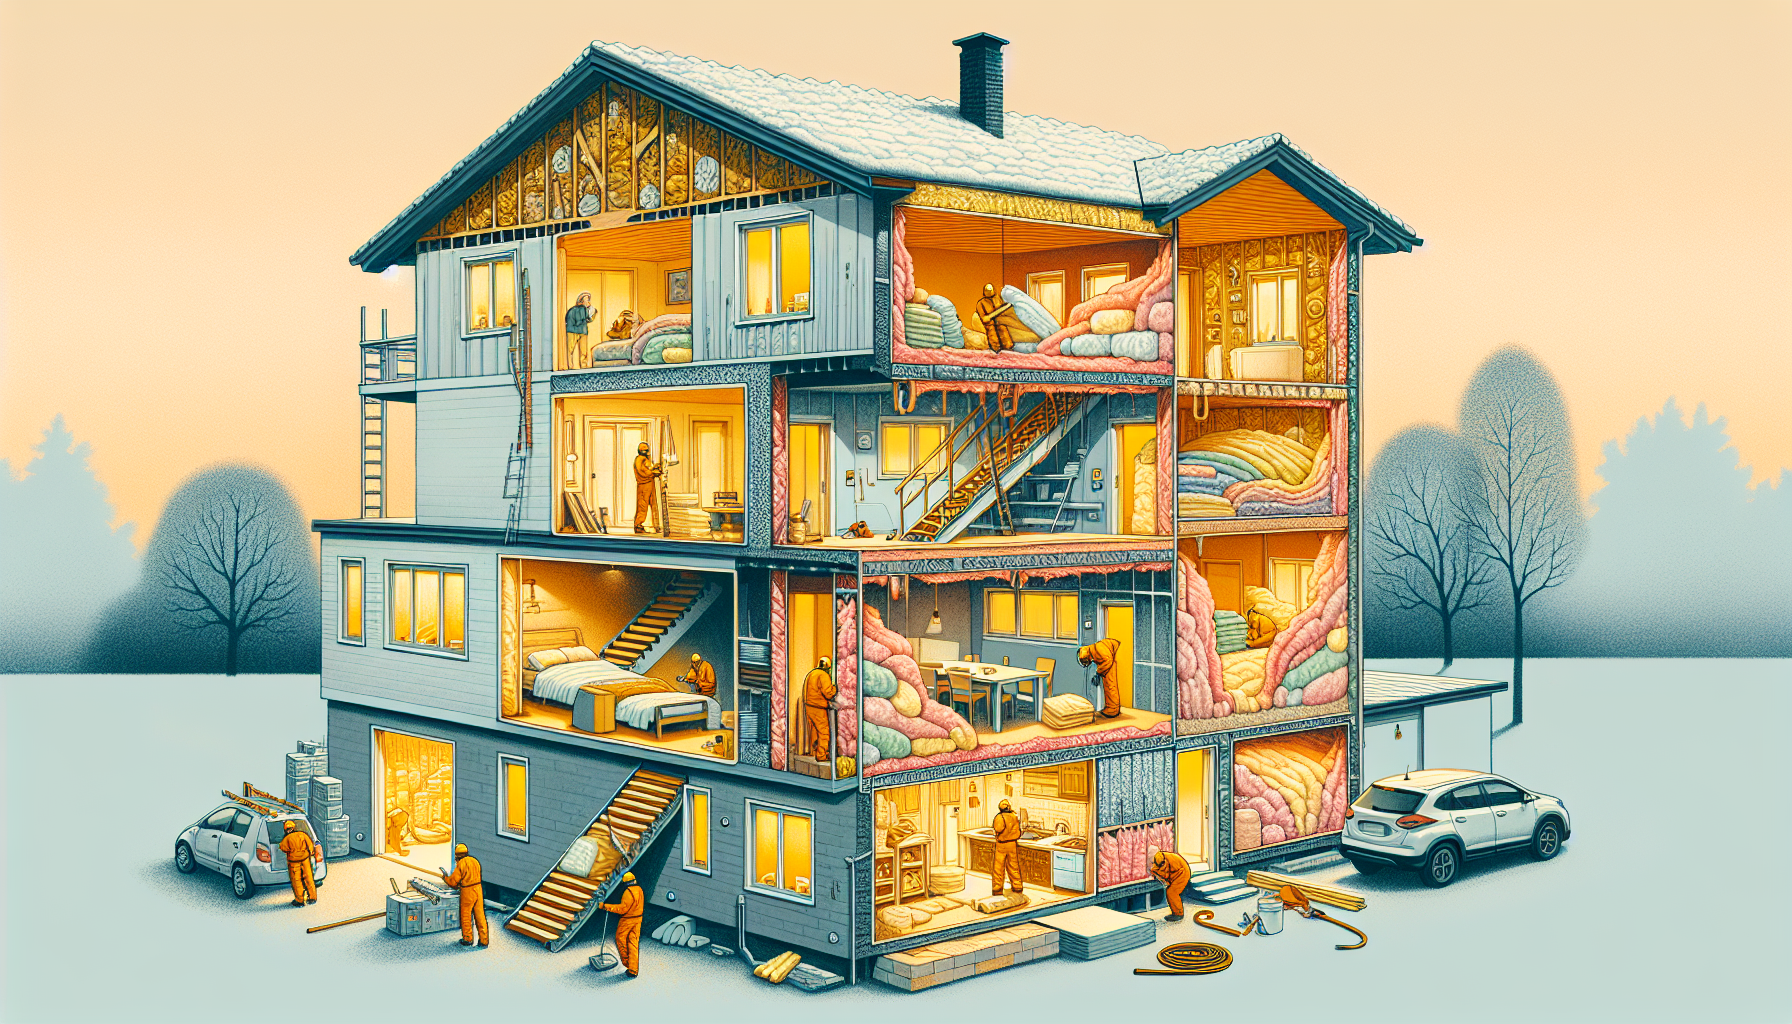 Dämmung (Fassade, Dach, Keller). Illustration von Dämmungsarbeiten an Fassade, Dach und Keller eines Mehrfamilienhauses